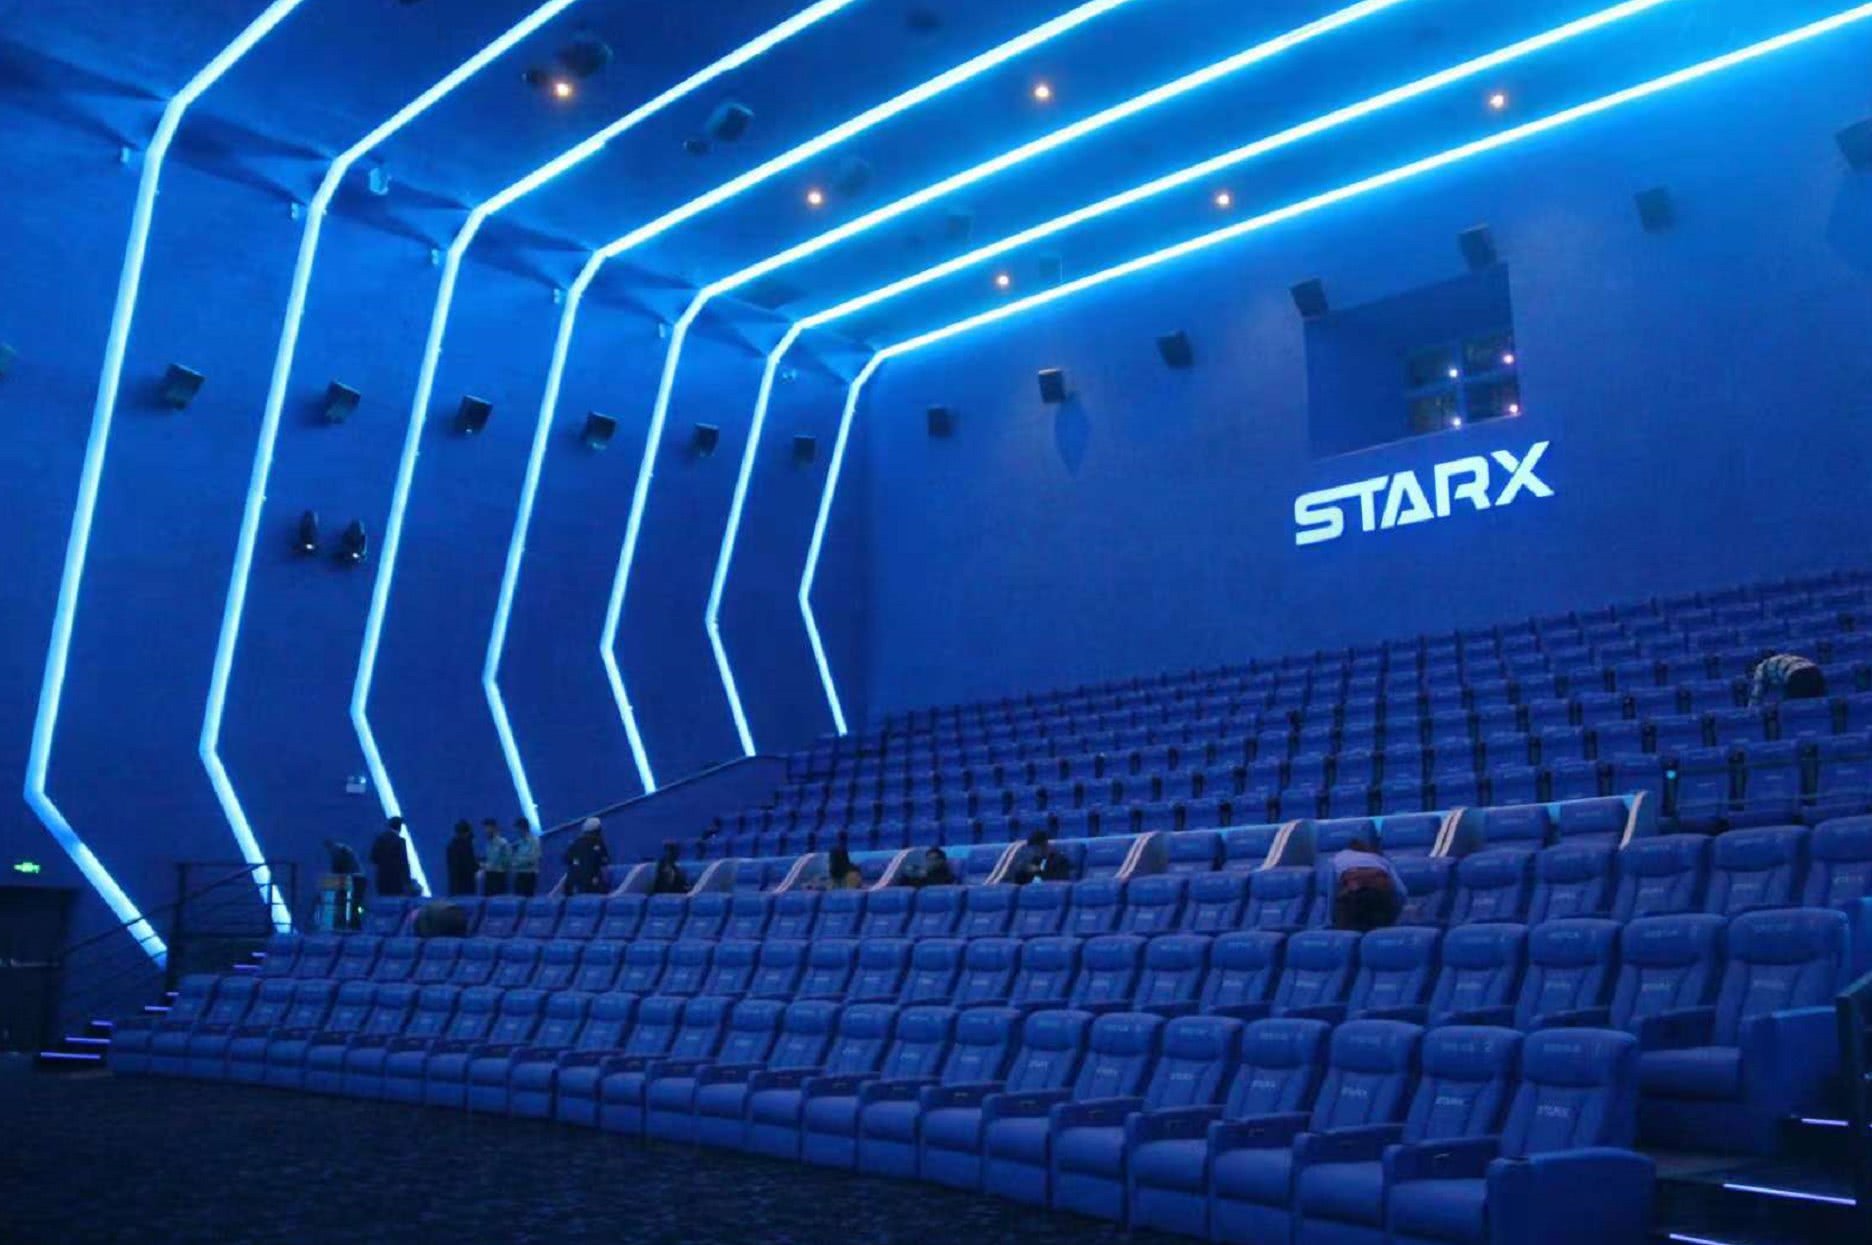 走进starx巨幕厅瞬间就被惊艳到了,整个影厅是太空舱设计,金属银幕高